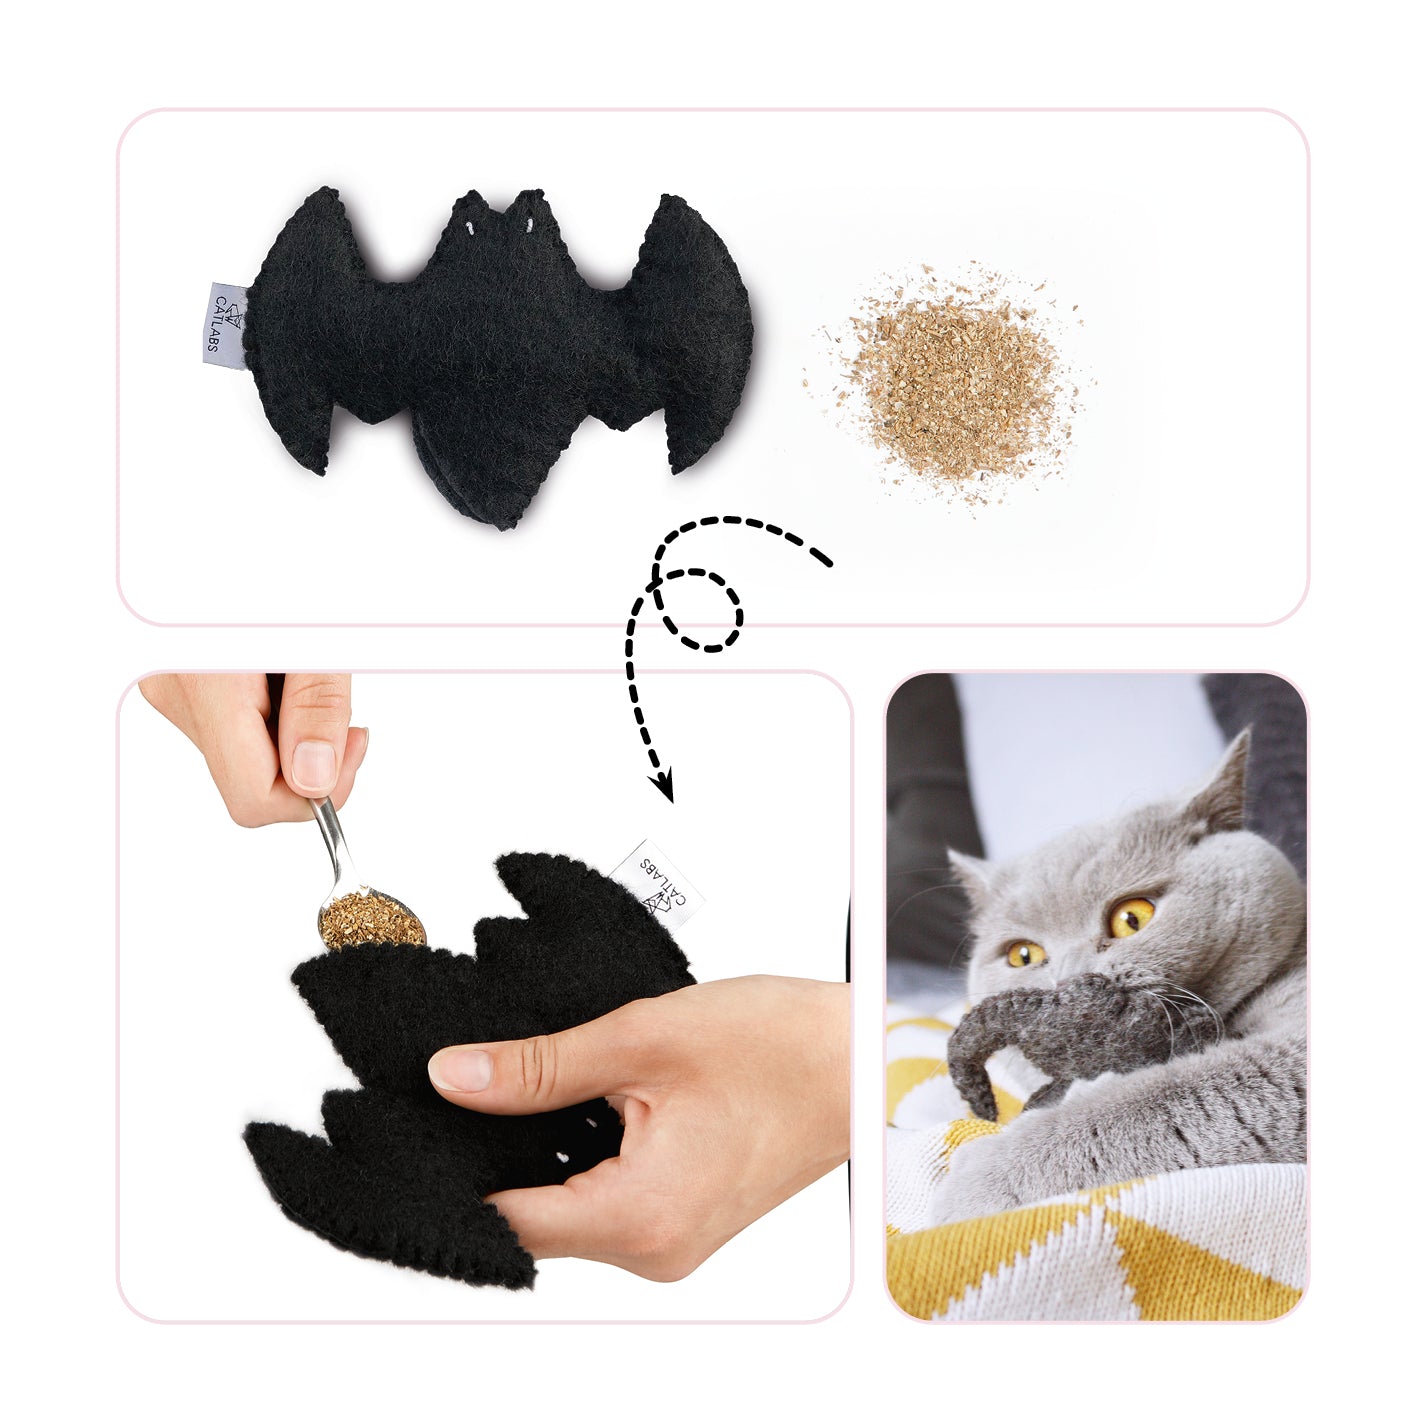 Katzenspielzeug "Flauschige Fledermaus" mit Baldrianwurzel